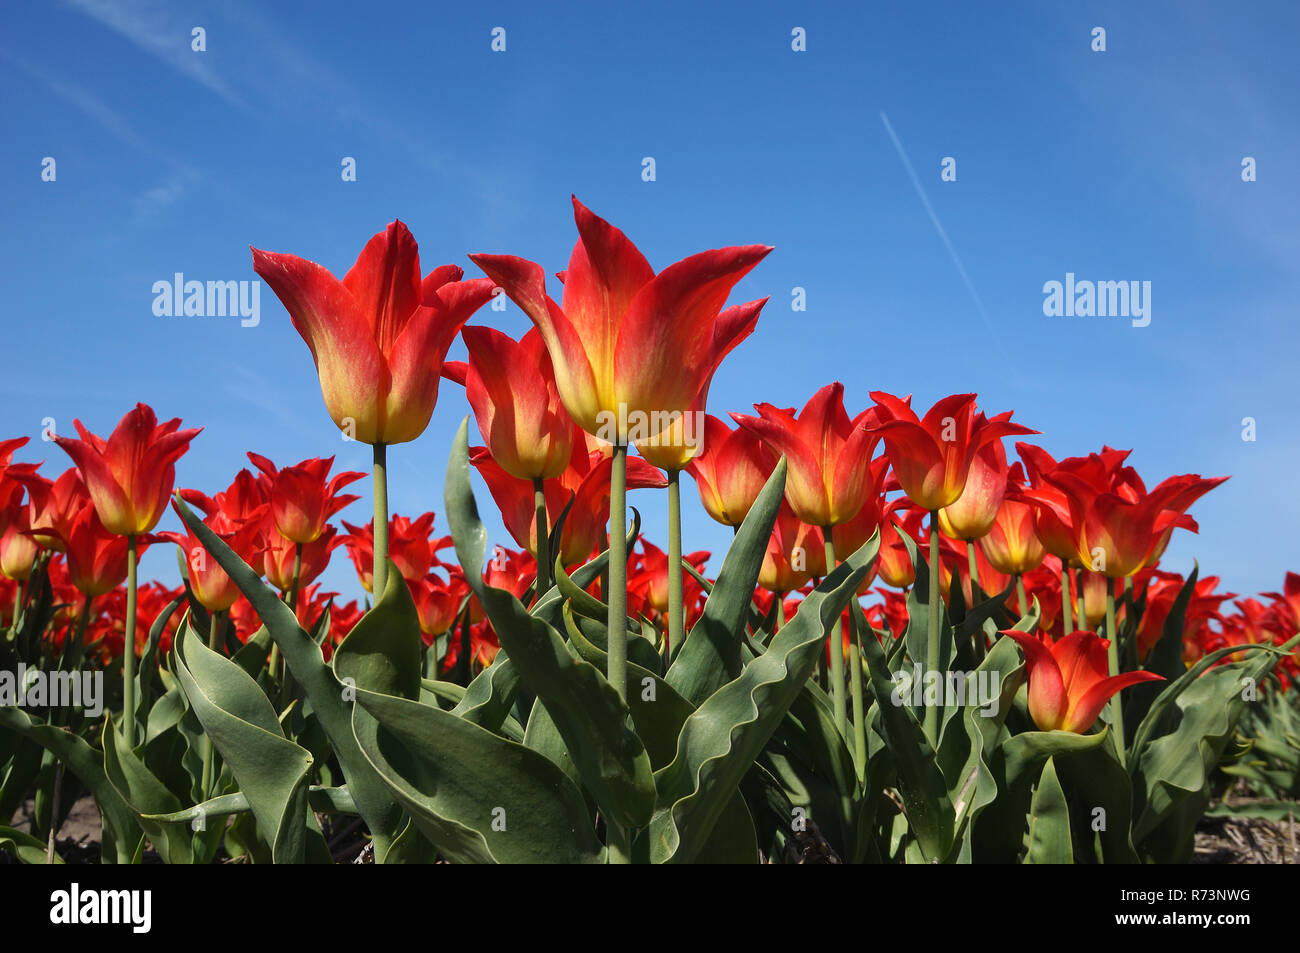 Détail d'un tulipfield rouge en pleine floraison, Noordwijkerhout, Boillenstreek, Pays-Bas Banque D'Images